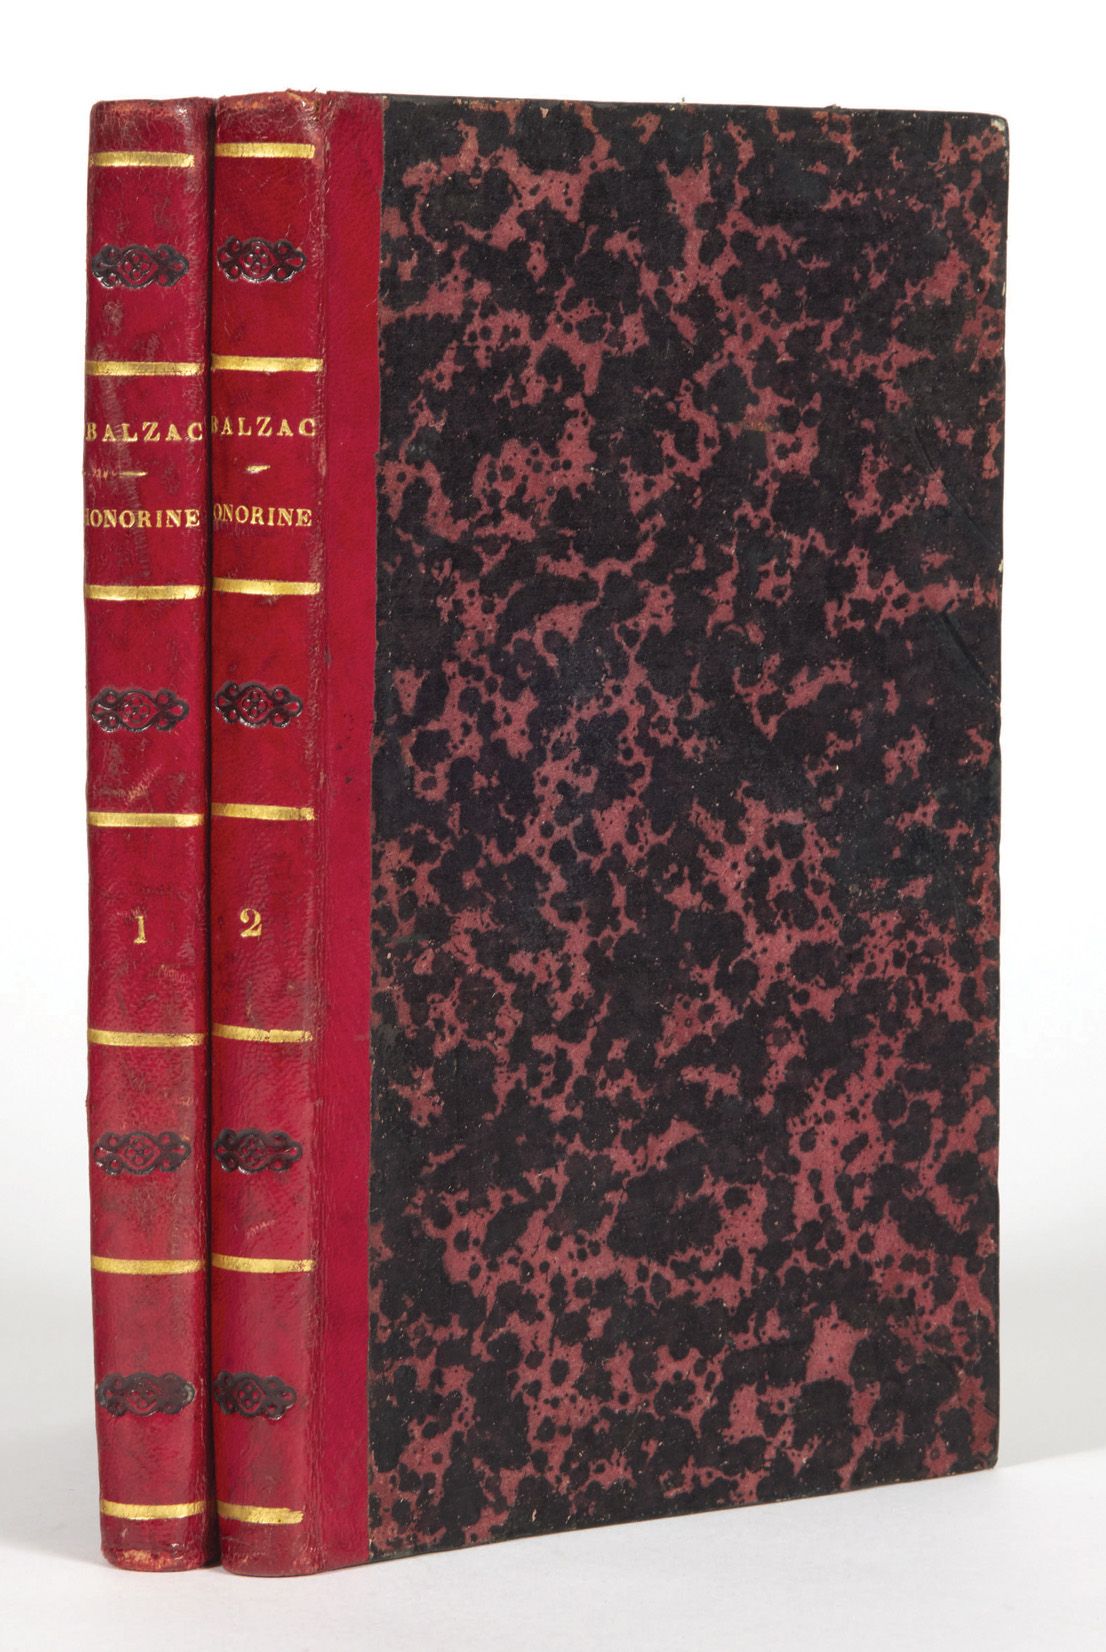 Honoré de BALZAC. Honorine. Paris, De Potter, 1844.
2 Bände in-8: roter Halbscha&hellip;